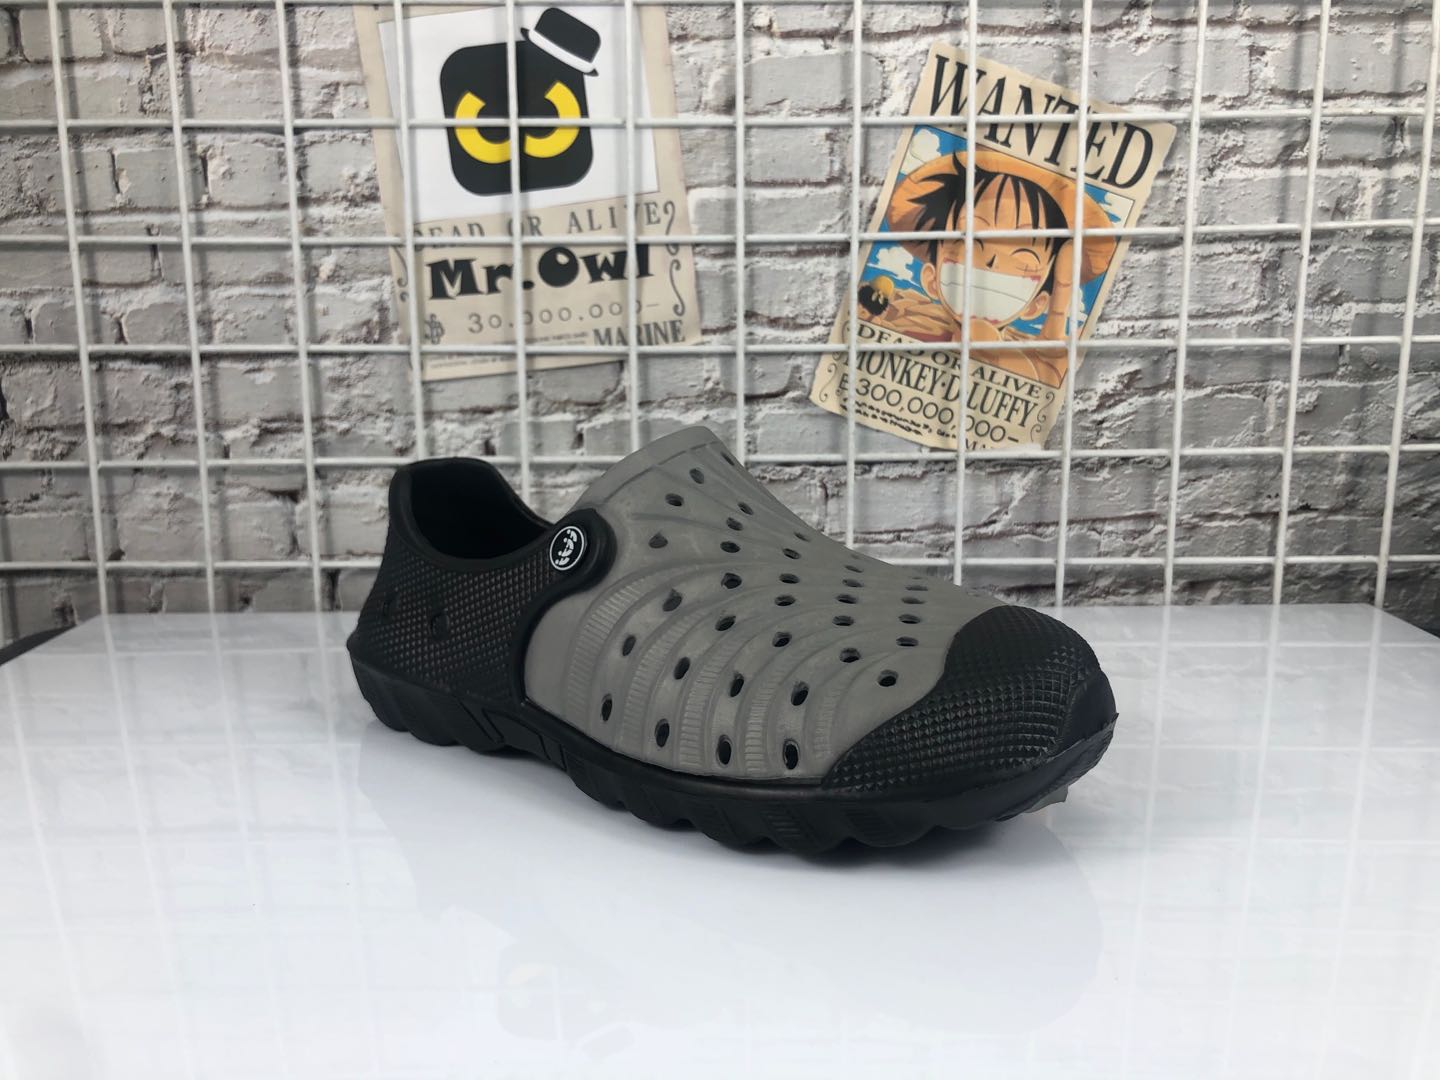 thick heel crocs